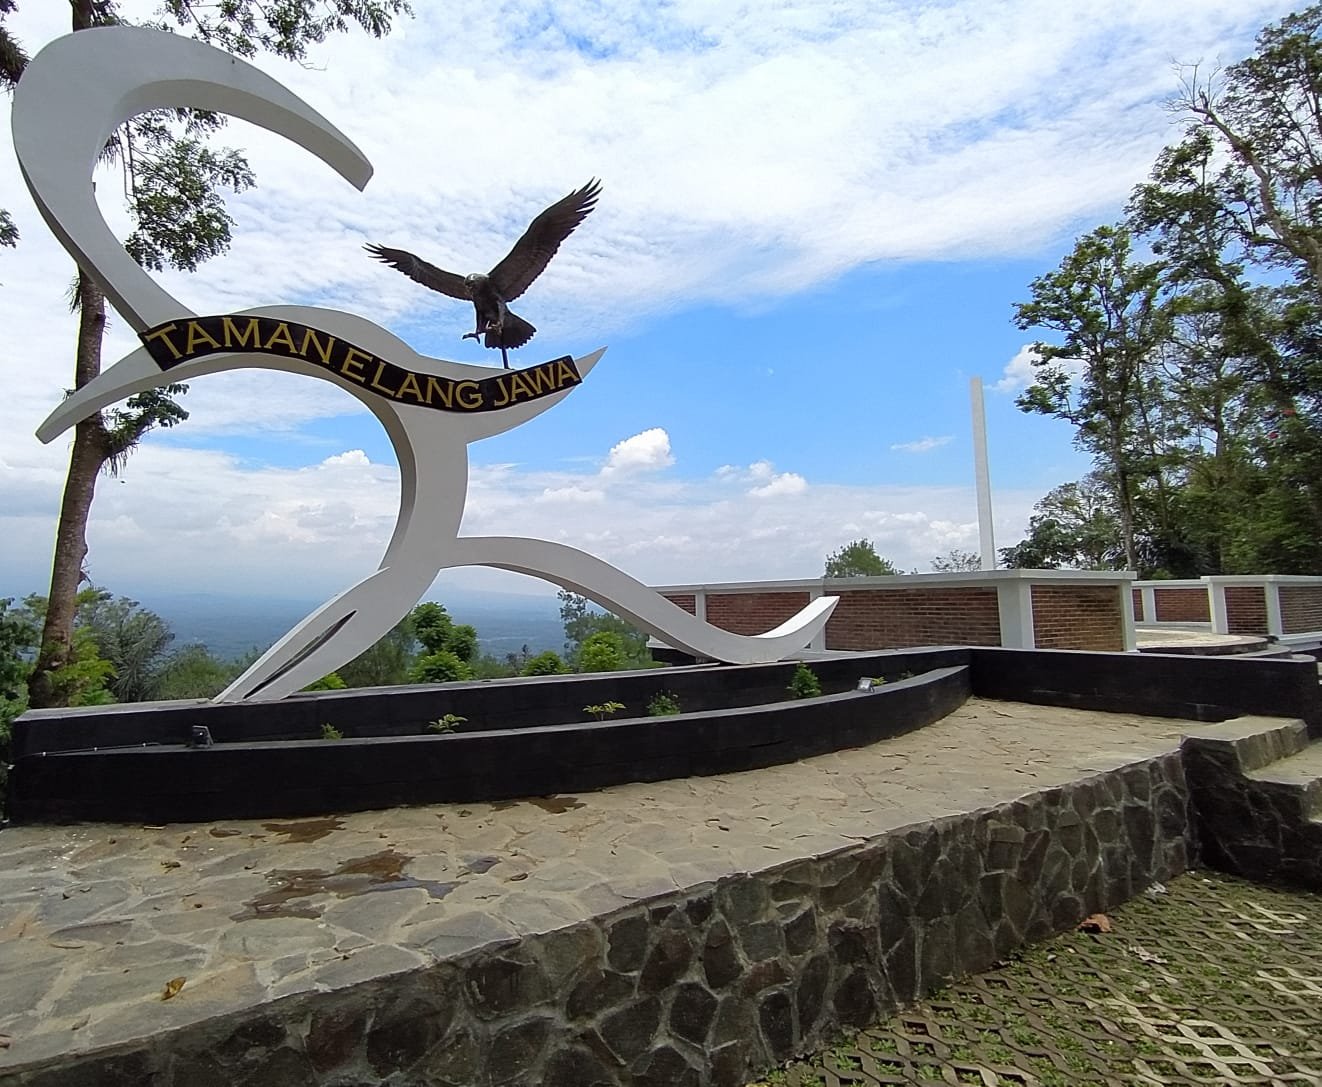 BARU. Taman Elang Jawa objek wisata baru di Kebun Raya Gunung Tidar yang instagramable. (foto : IST/magelang ekspres)